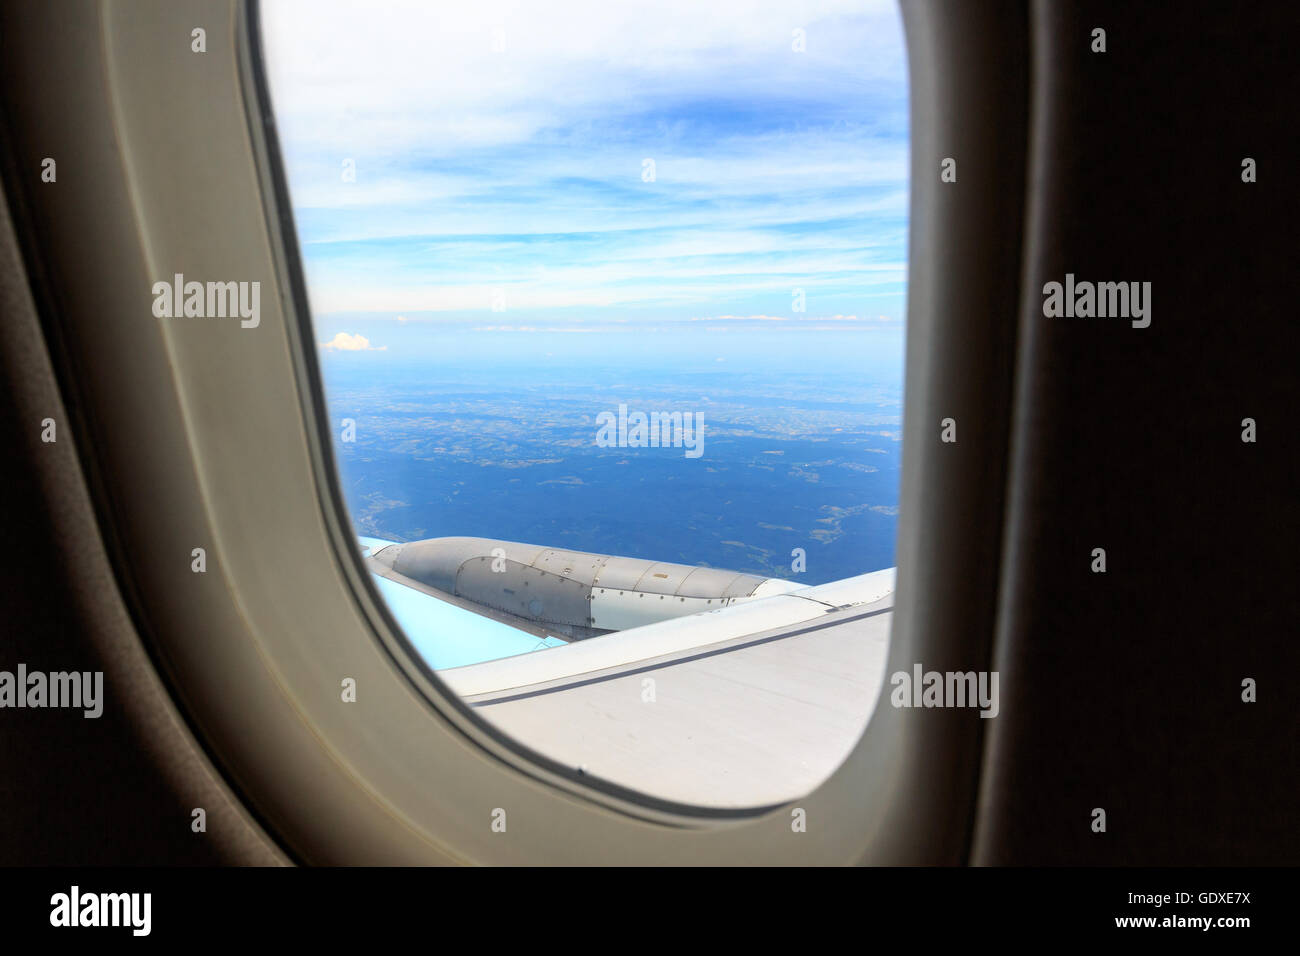 La vue de dessus d'une fenêtre de l'avion en vol Banque D'Images